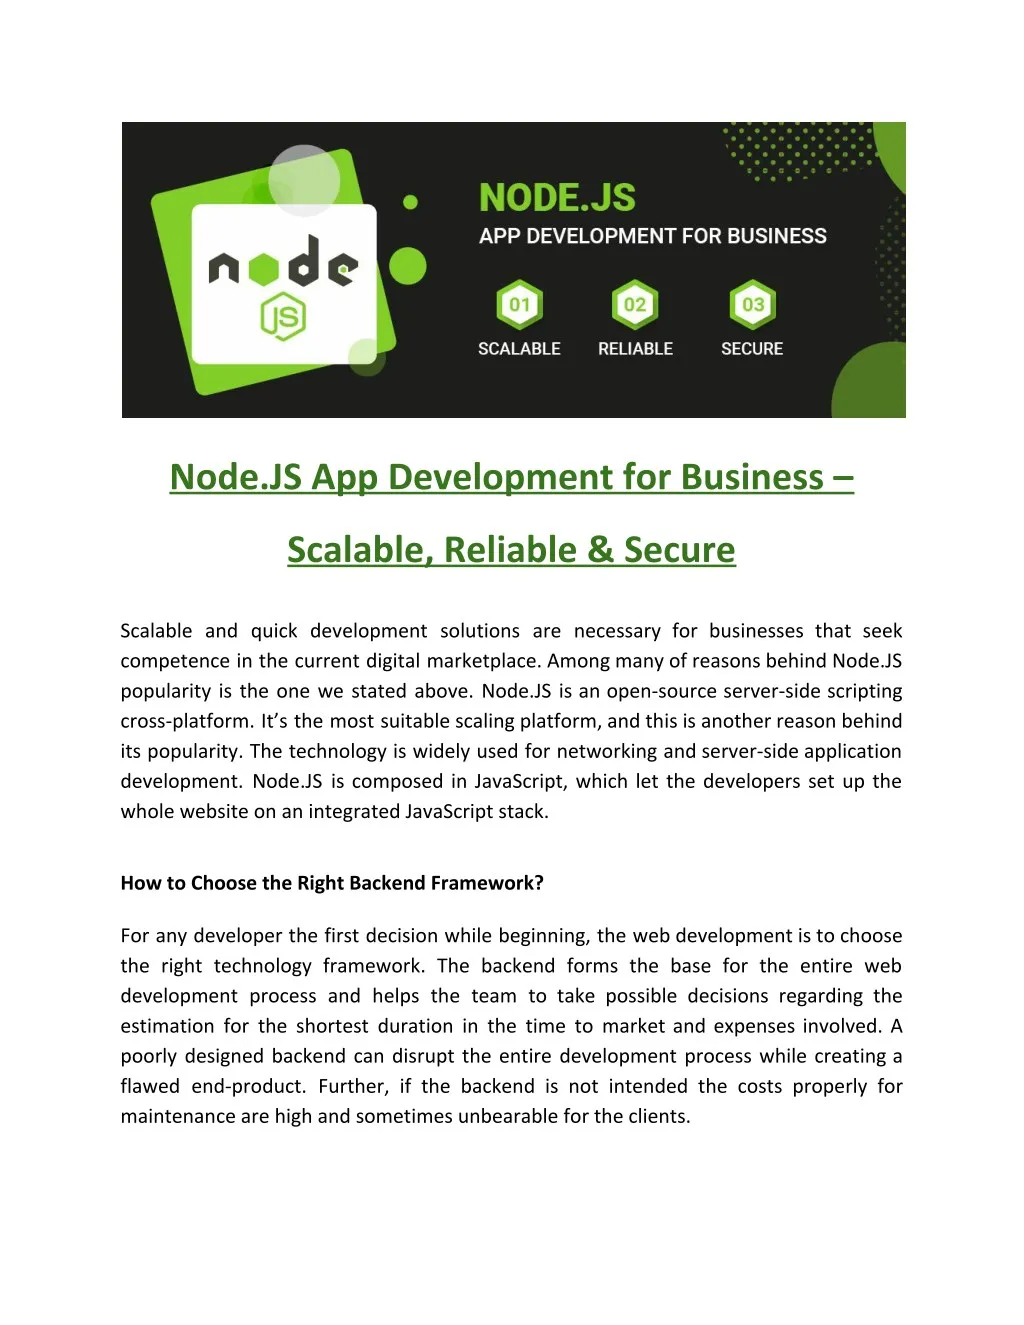 node js app development for business